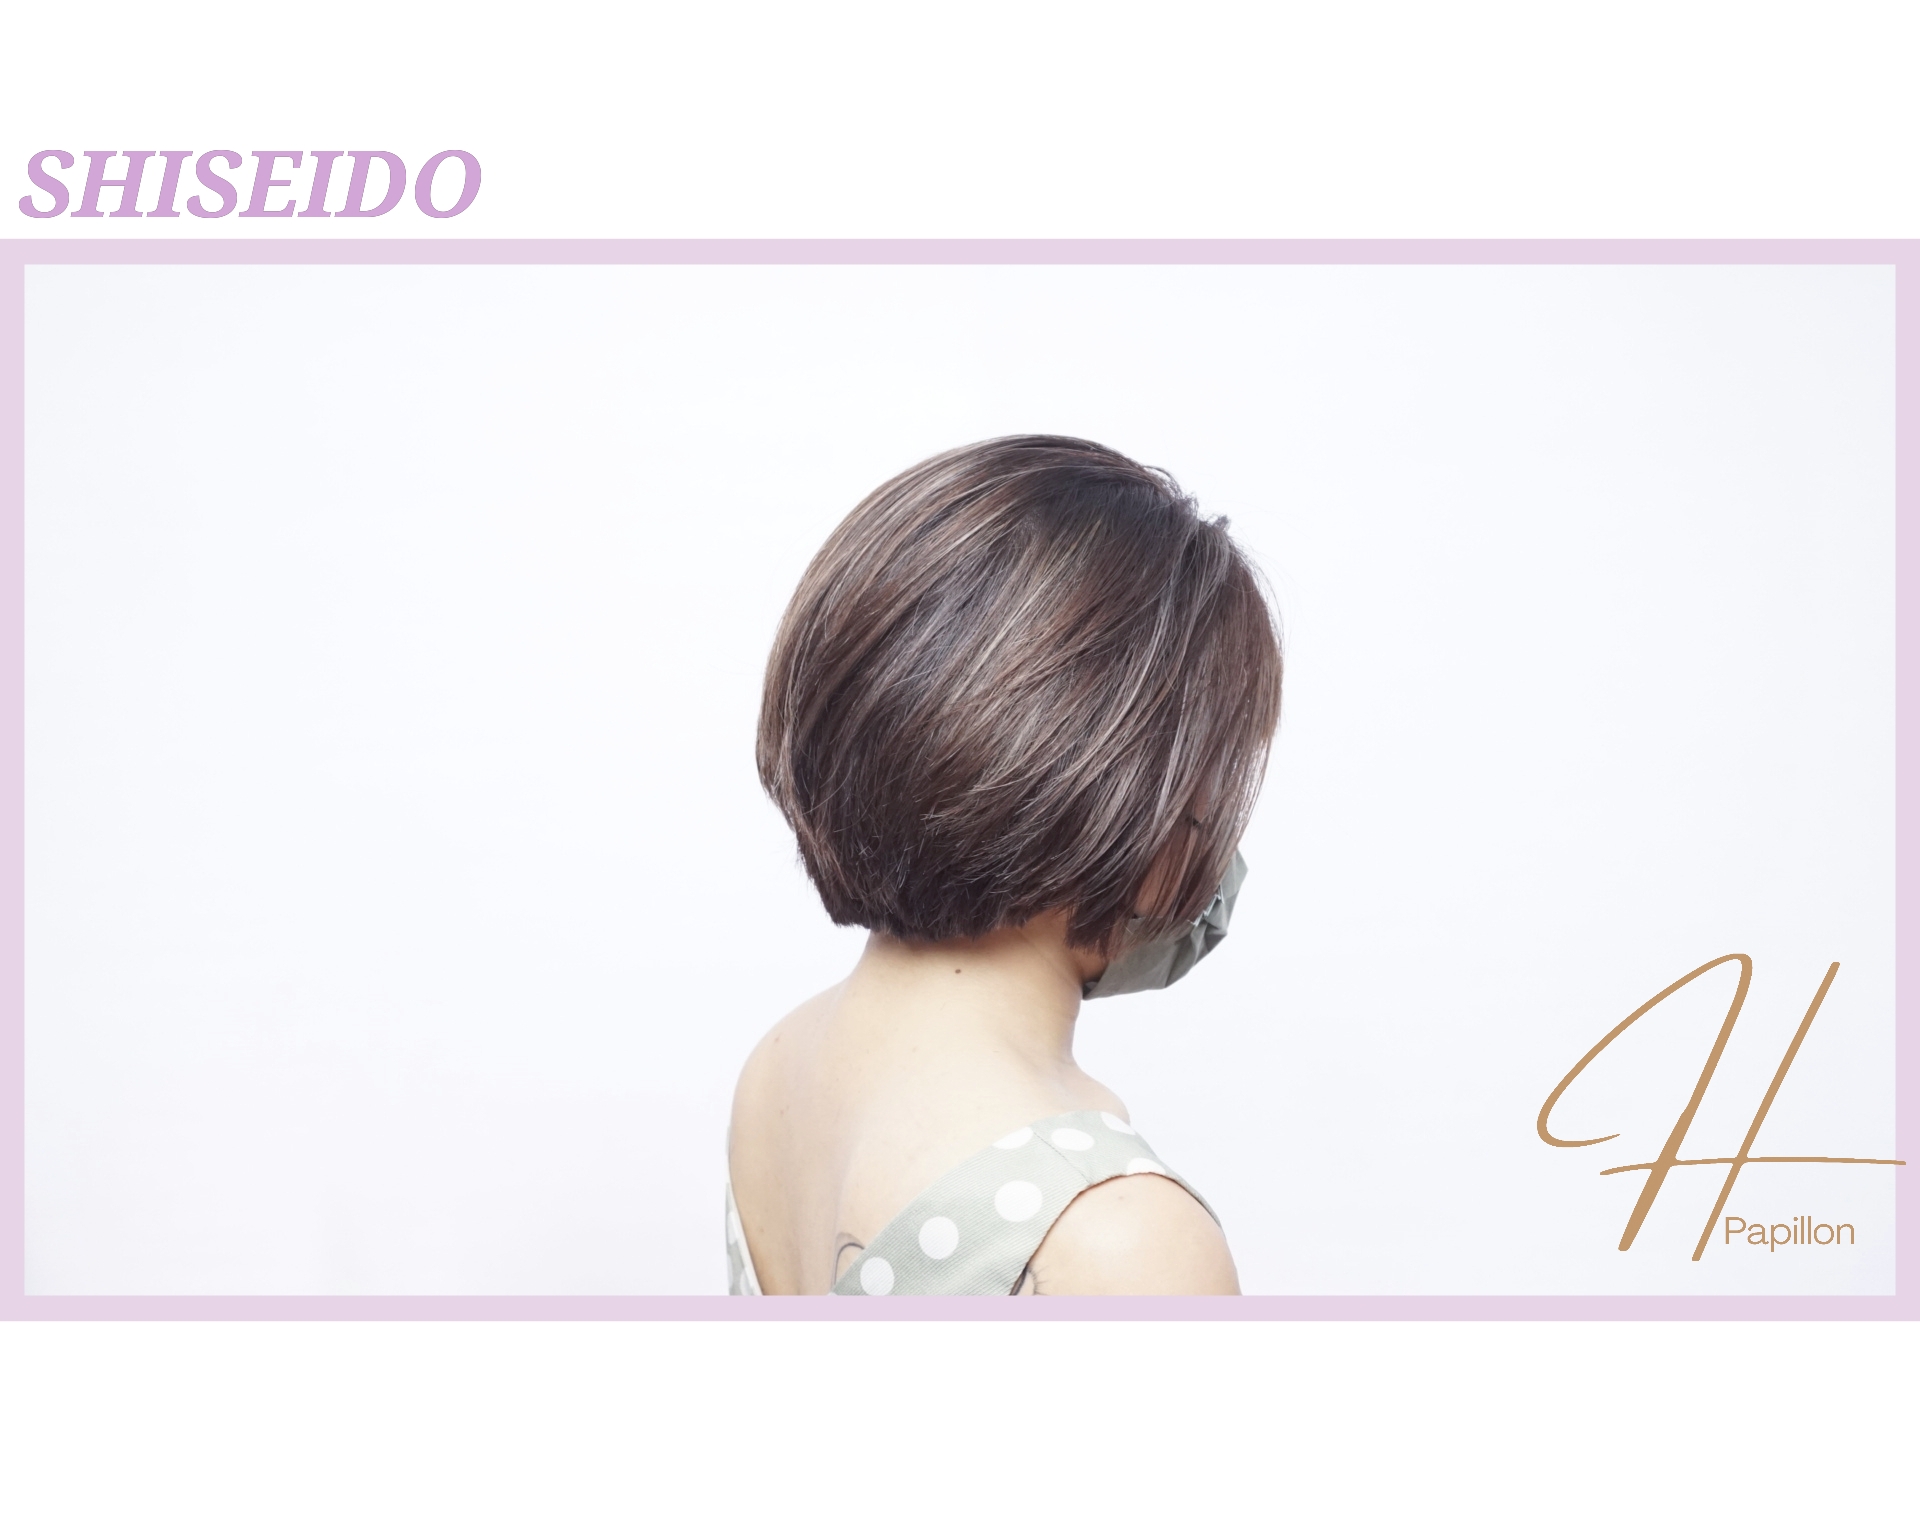 作品参考 / 最新消息:shiseido primience